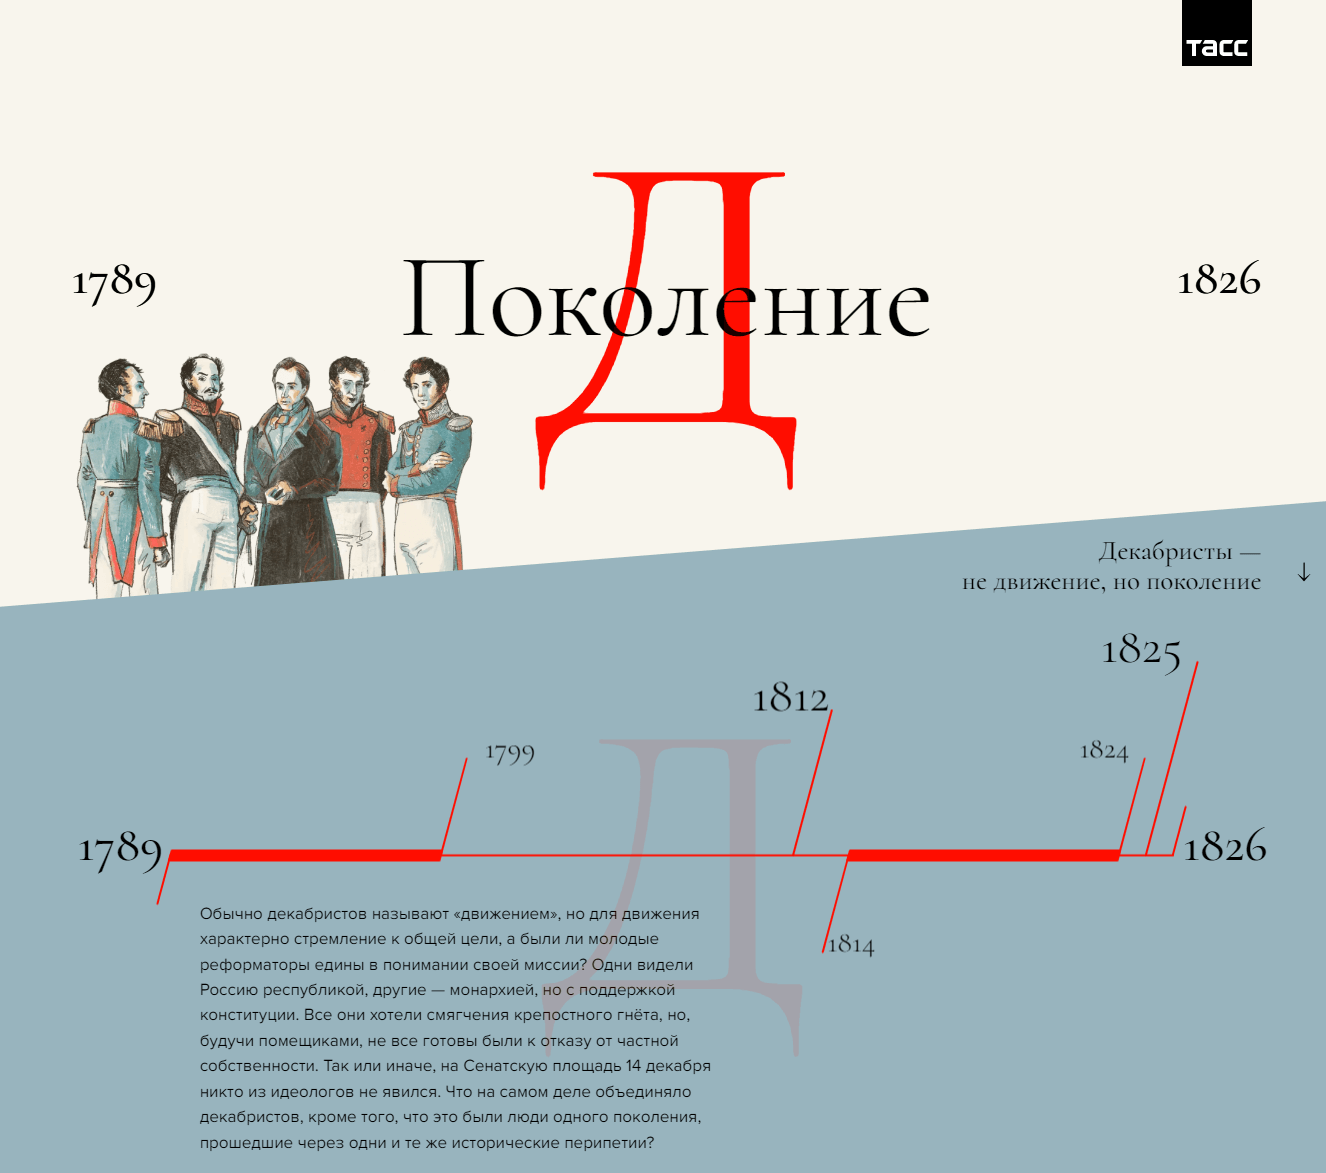 Пример лонгрида-реконструкции